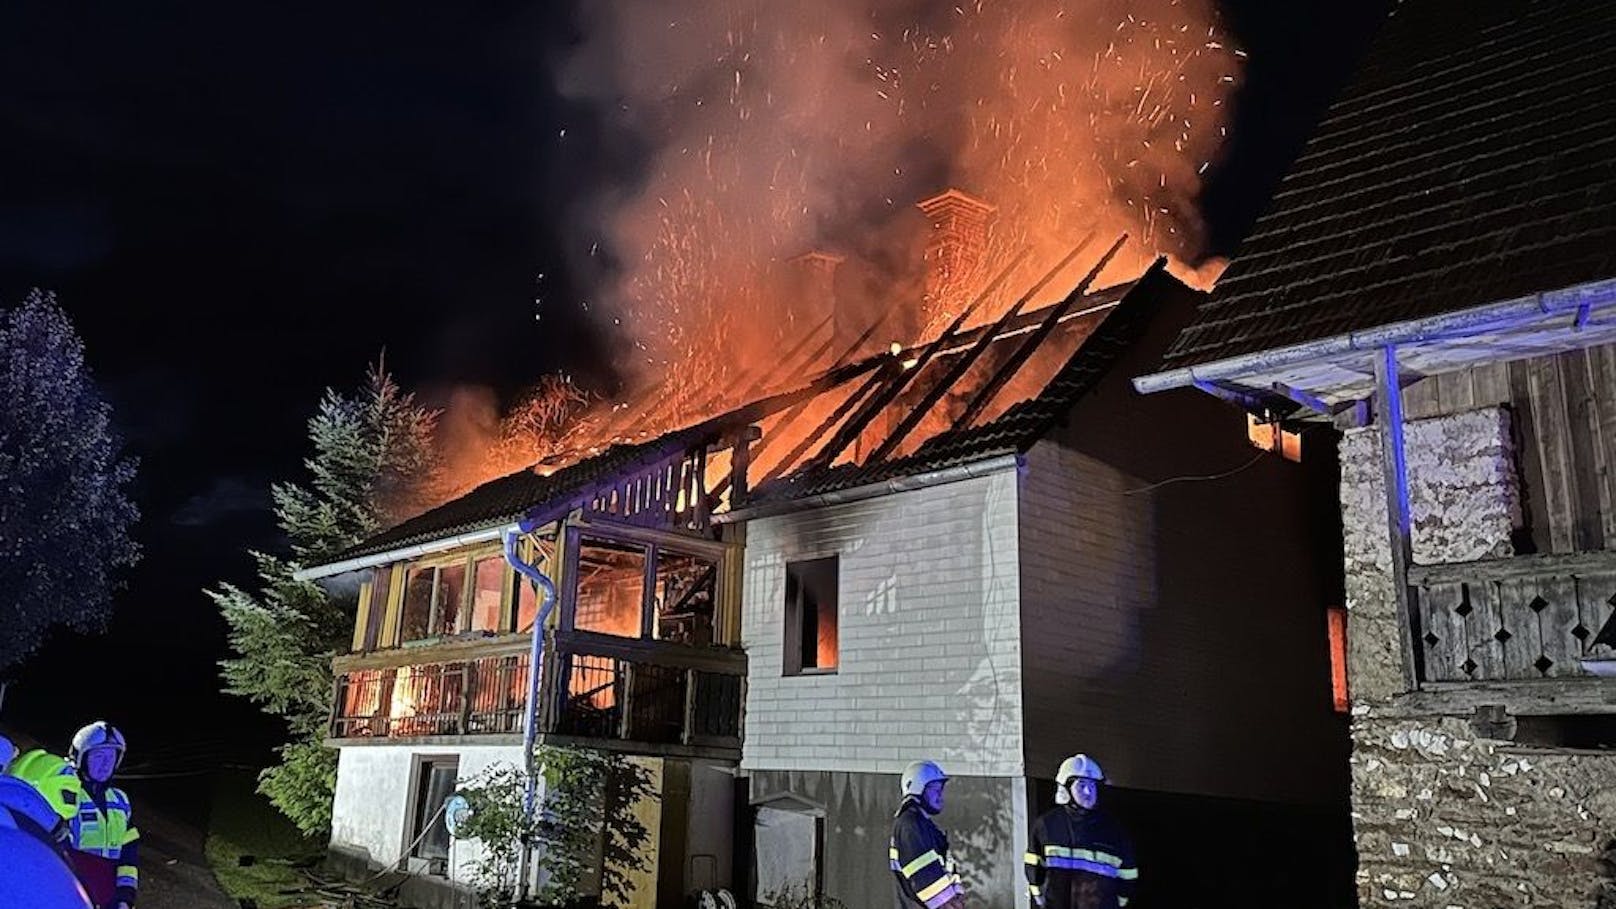 Wohnhausbrand in Wolfsberg: 83-jährige Hausbesitzerin stirbt in den Flammen